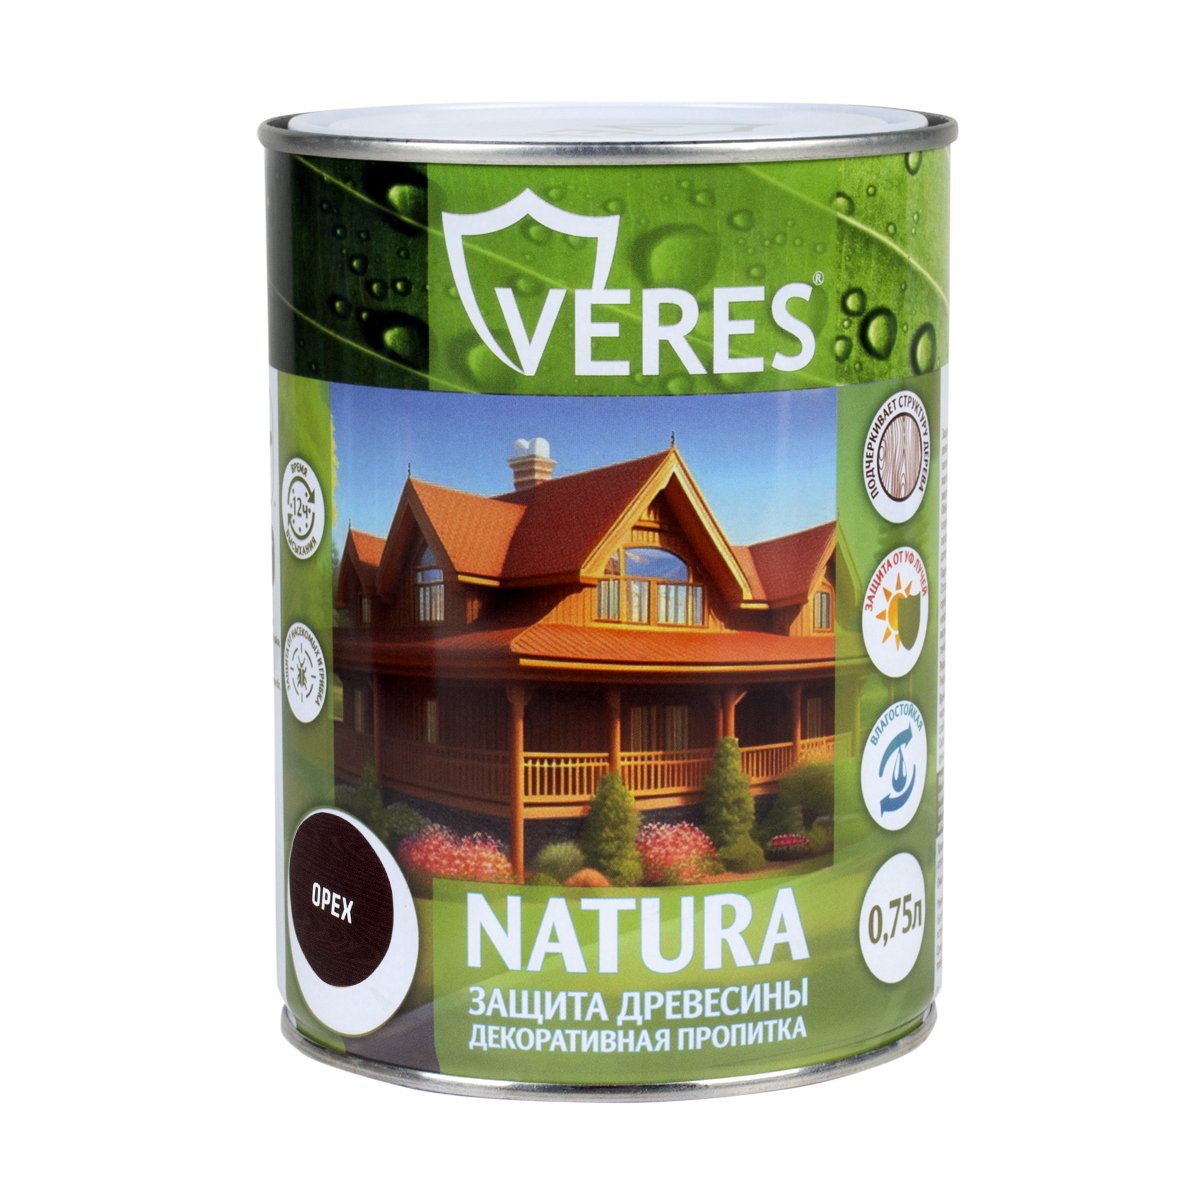 Декоративная пропитка для дерева Veres Natura полуматовая 0 75 л орех, VR-116